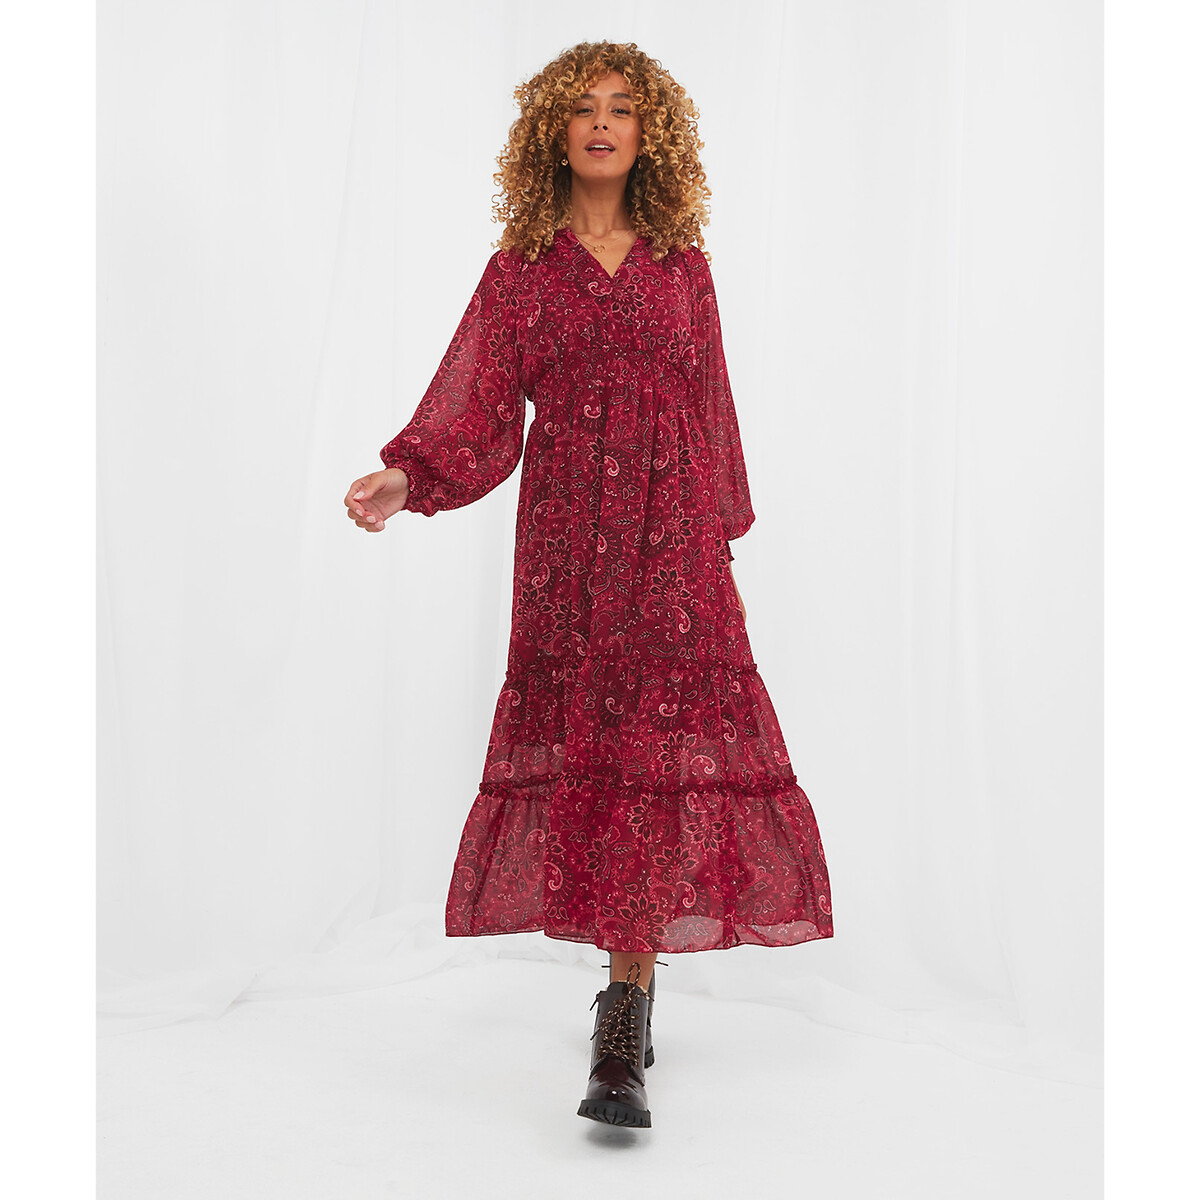 Платье JOE BROWNS Платье Из вуали пояс со сборками принт пейсли 48 розовый, размер 48 - фото 1